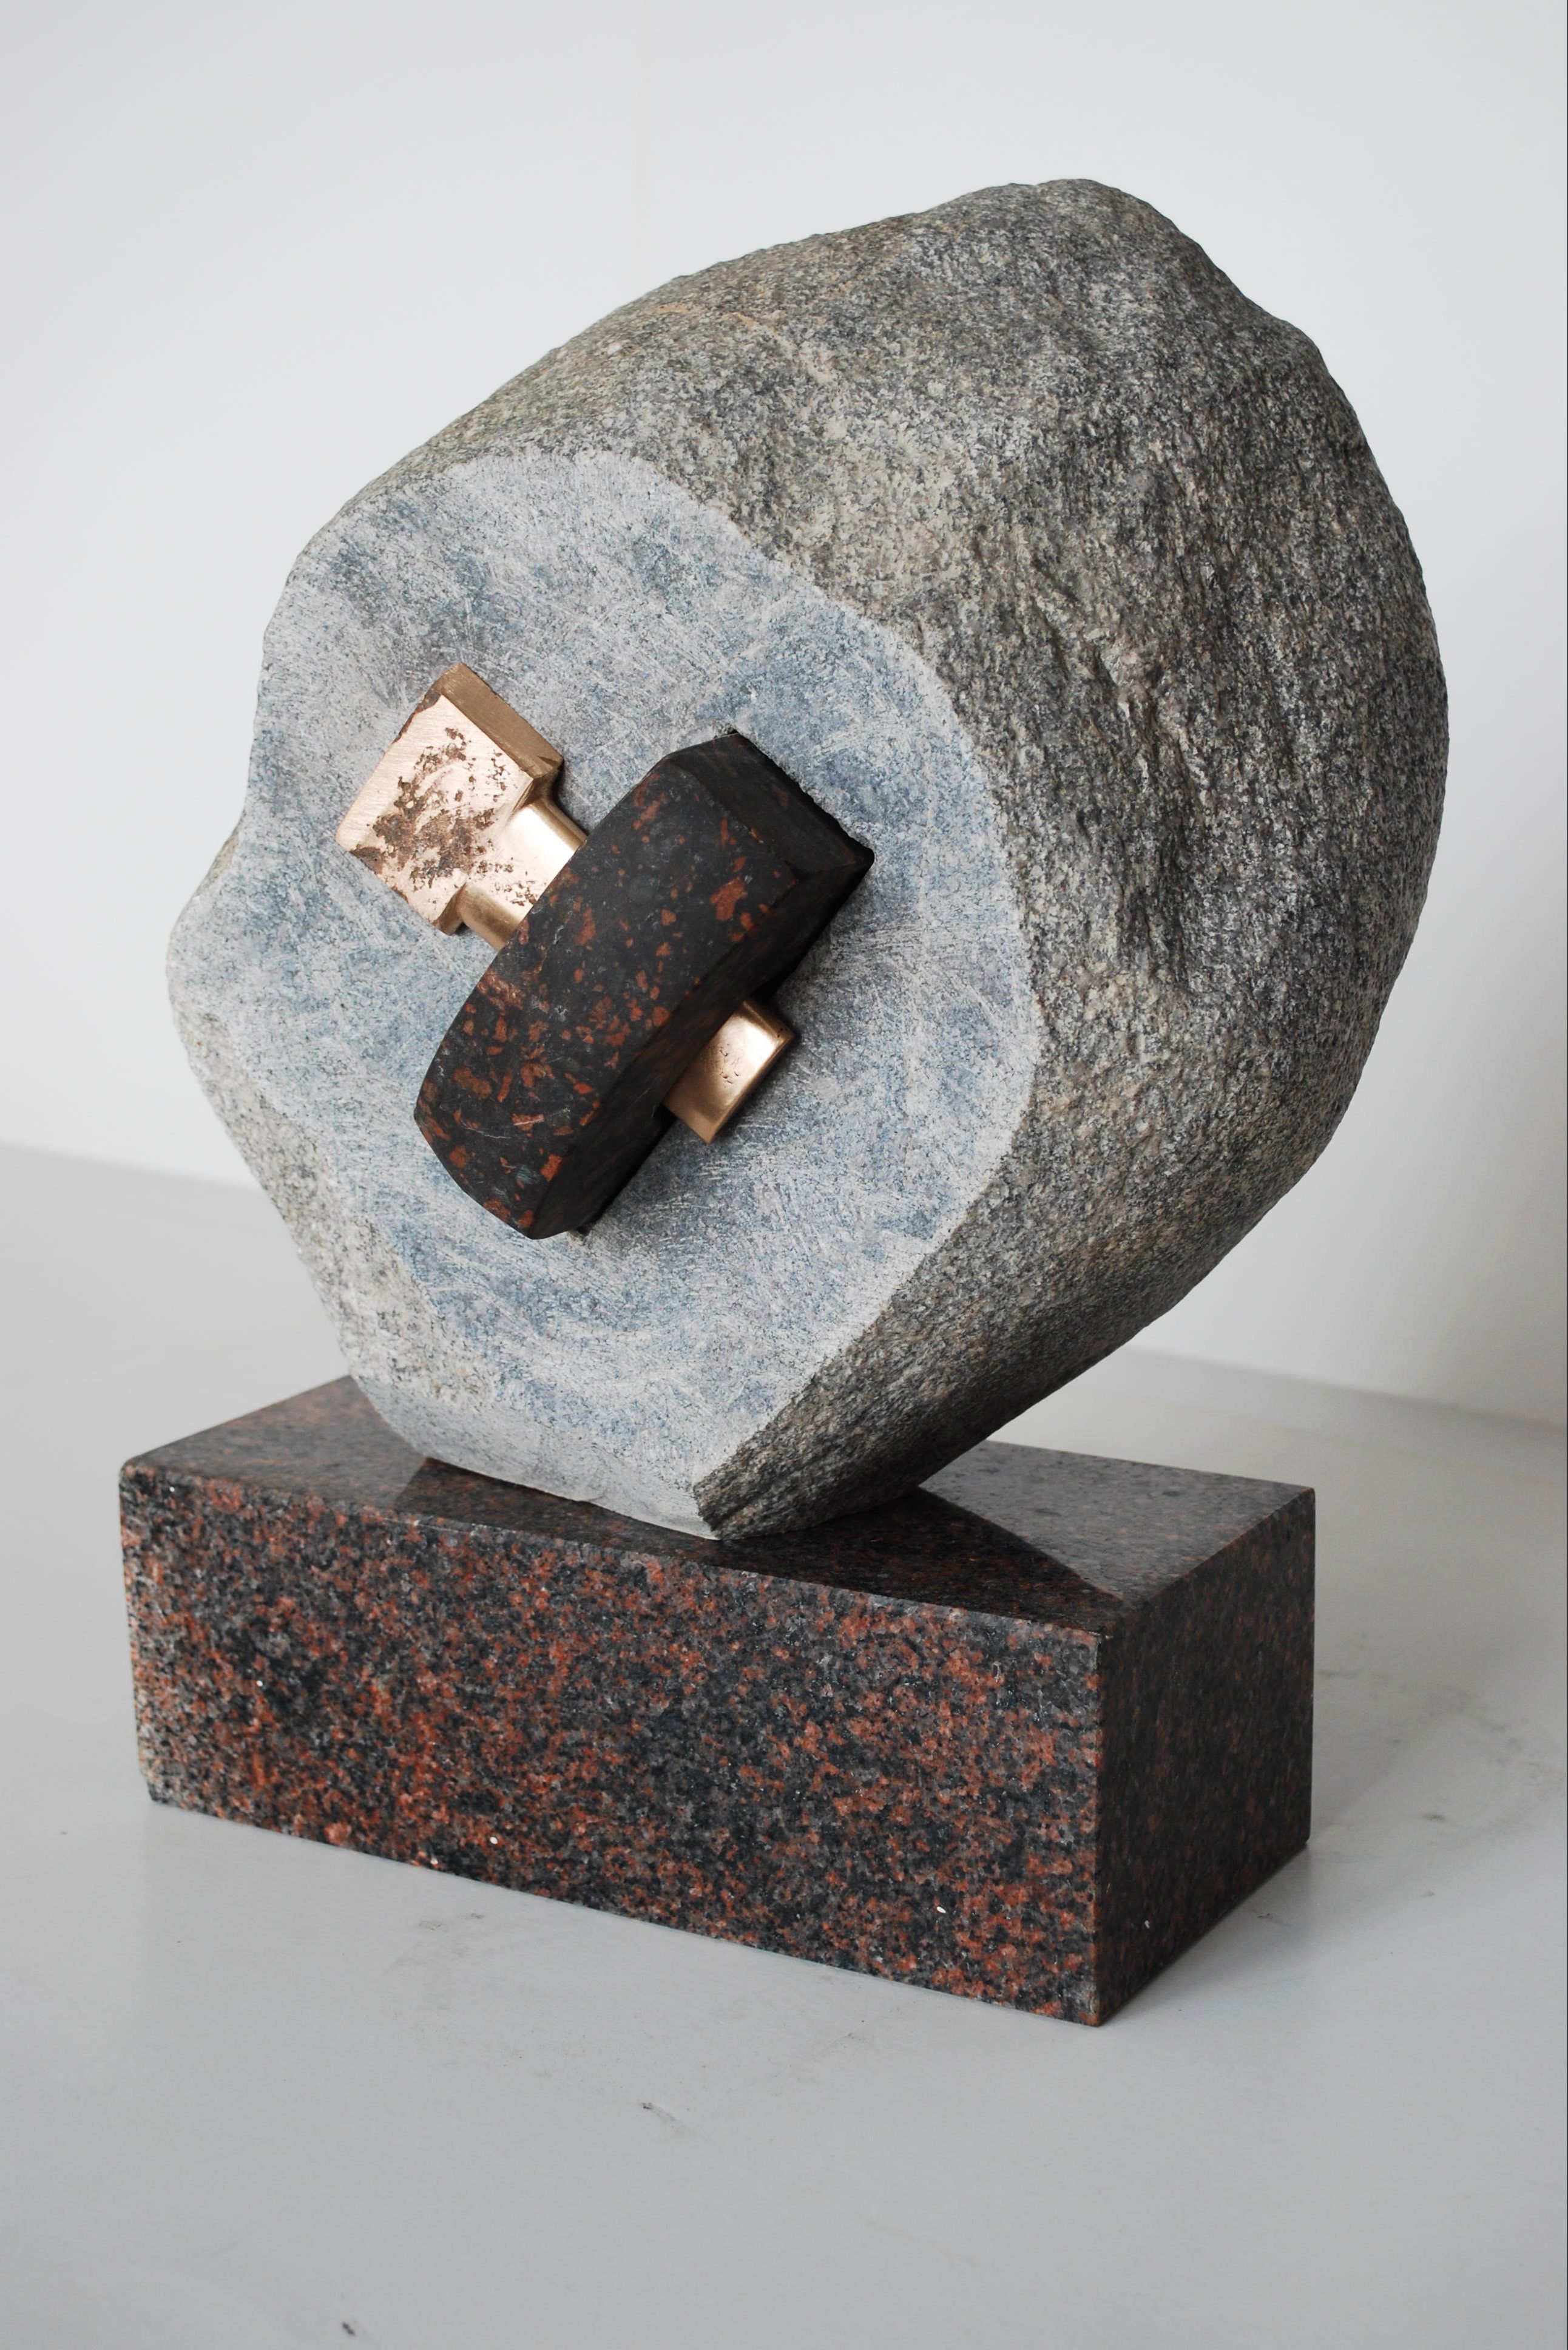 skulptūra iš šviesaus akmens ir dviejų tamsaus akmens detalių (galas)/ sculpture made of one piece light stone and two pieces dark stone (back)